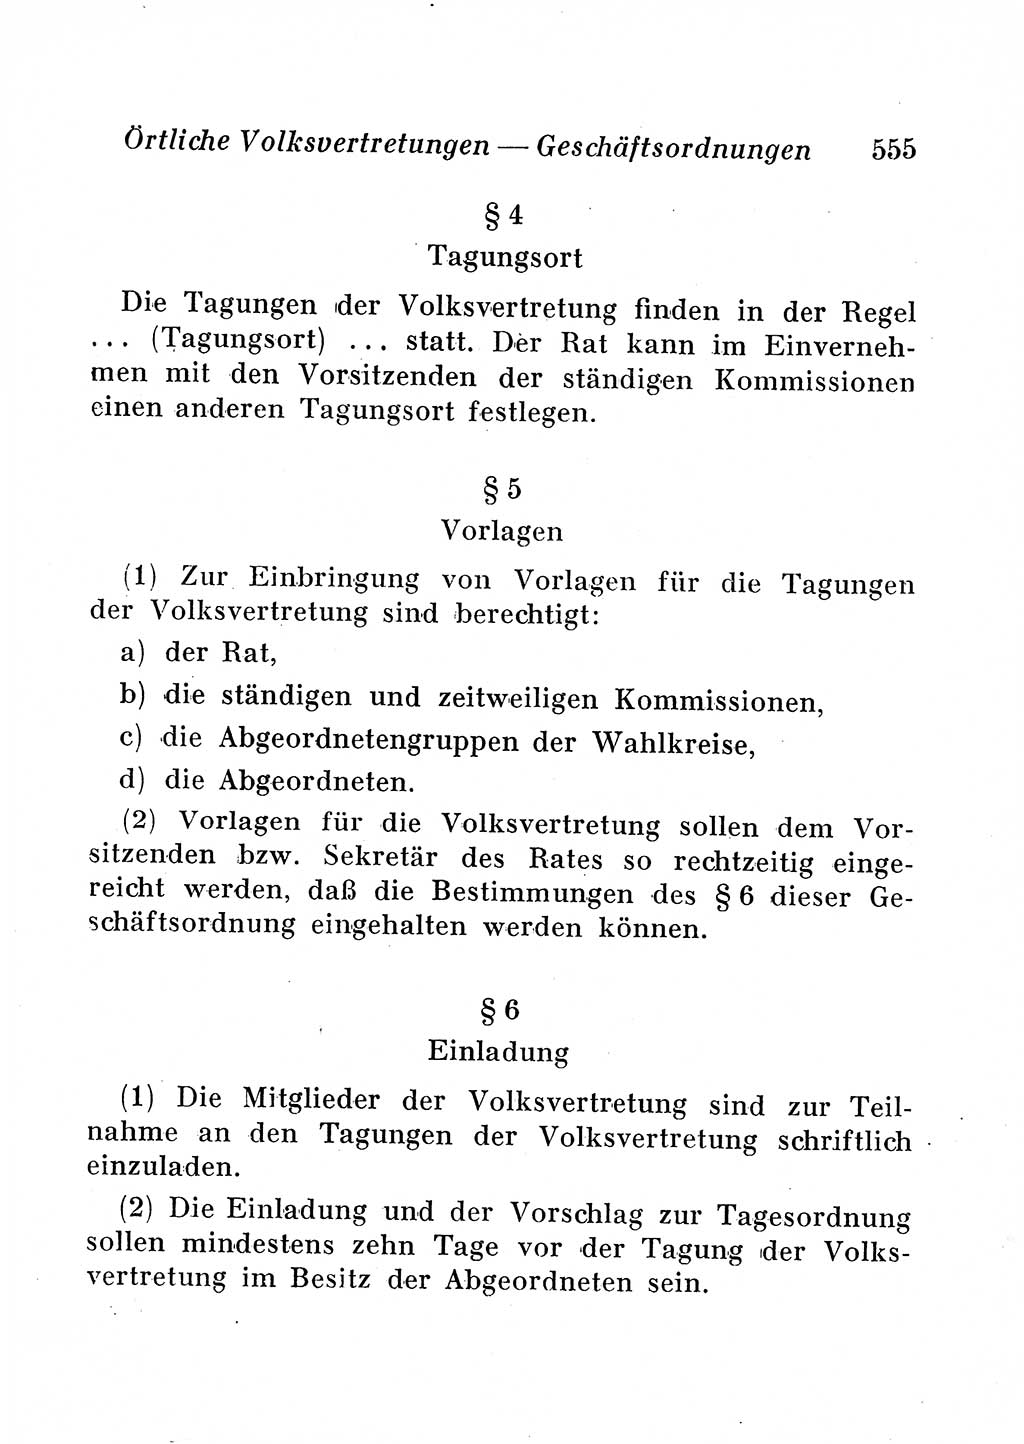 Staats- und verwaltungsrechtliche Gesetze der Deutschen Demokratischen Republik (DDR) 1958, Seite 555 (StVerwR Ges. DDR 1958, S. 555)